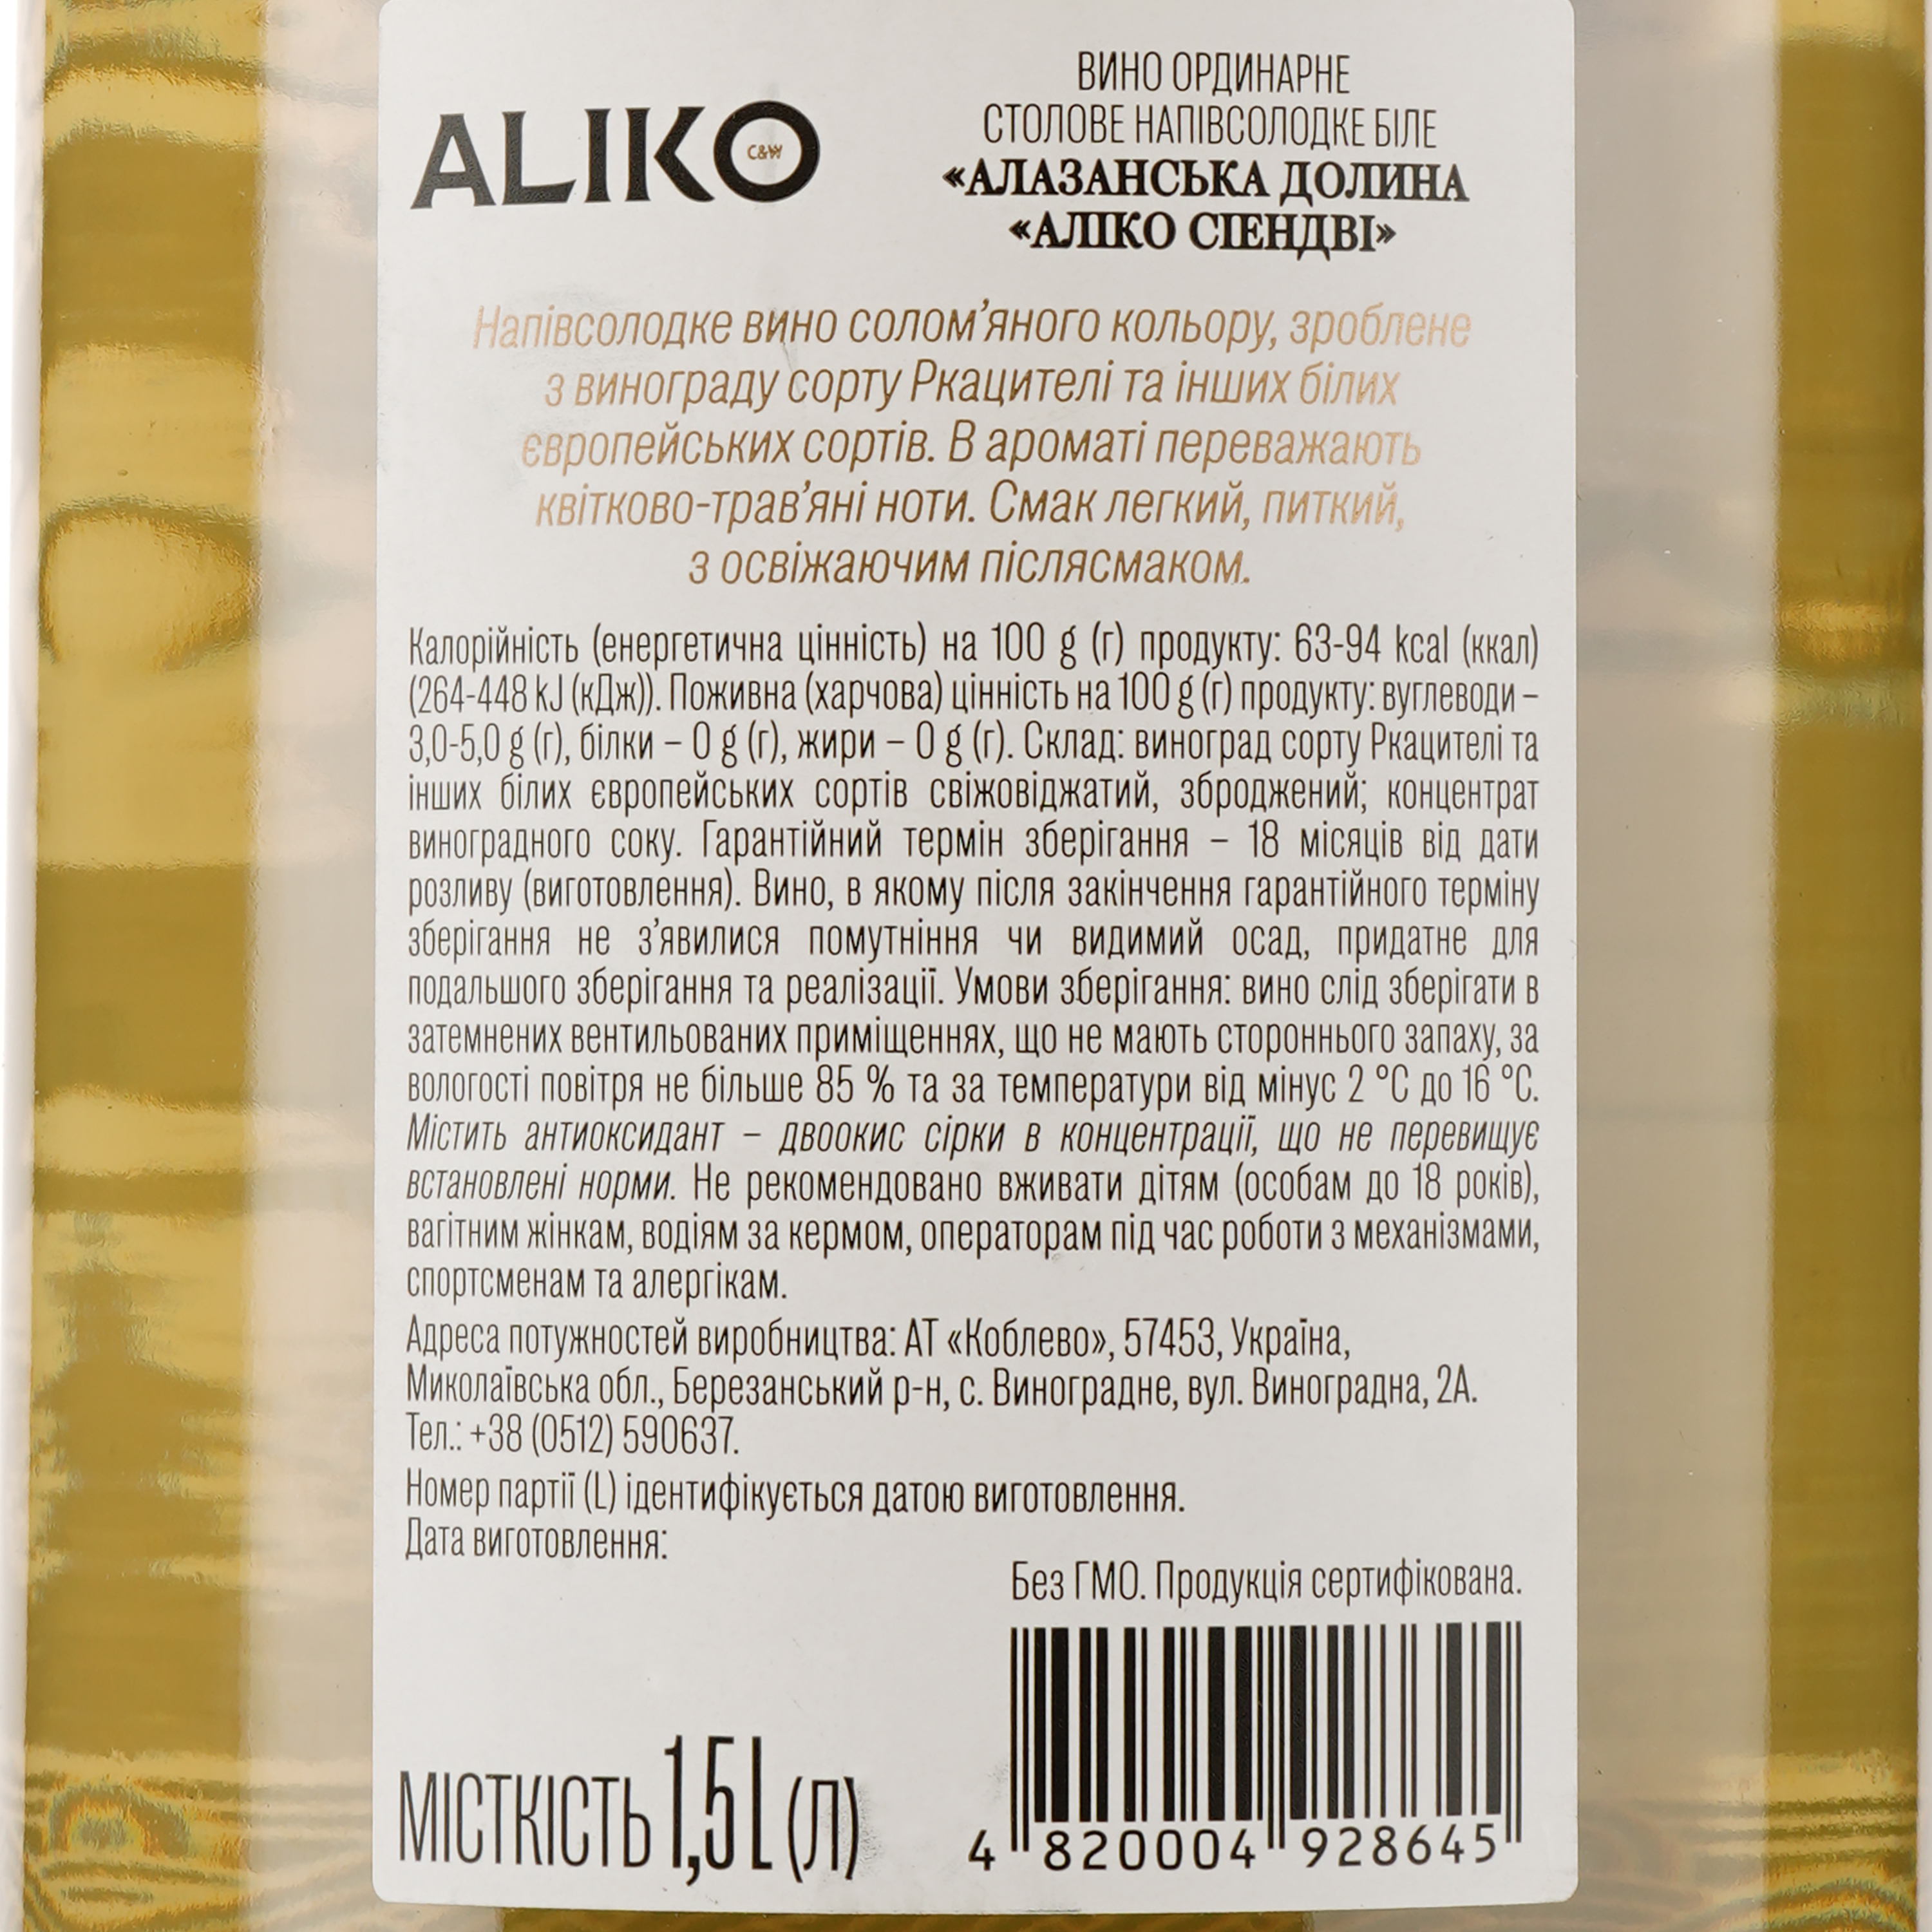 Вино Aliko Алазанська долина, біле, напівсолодке, 9-13%, 1,5 л - фото 3